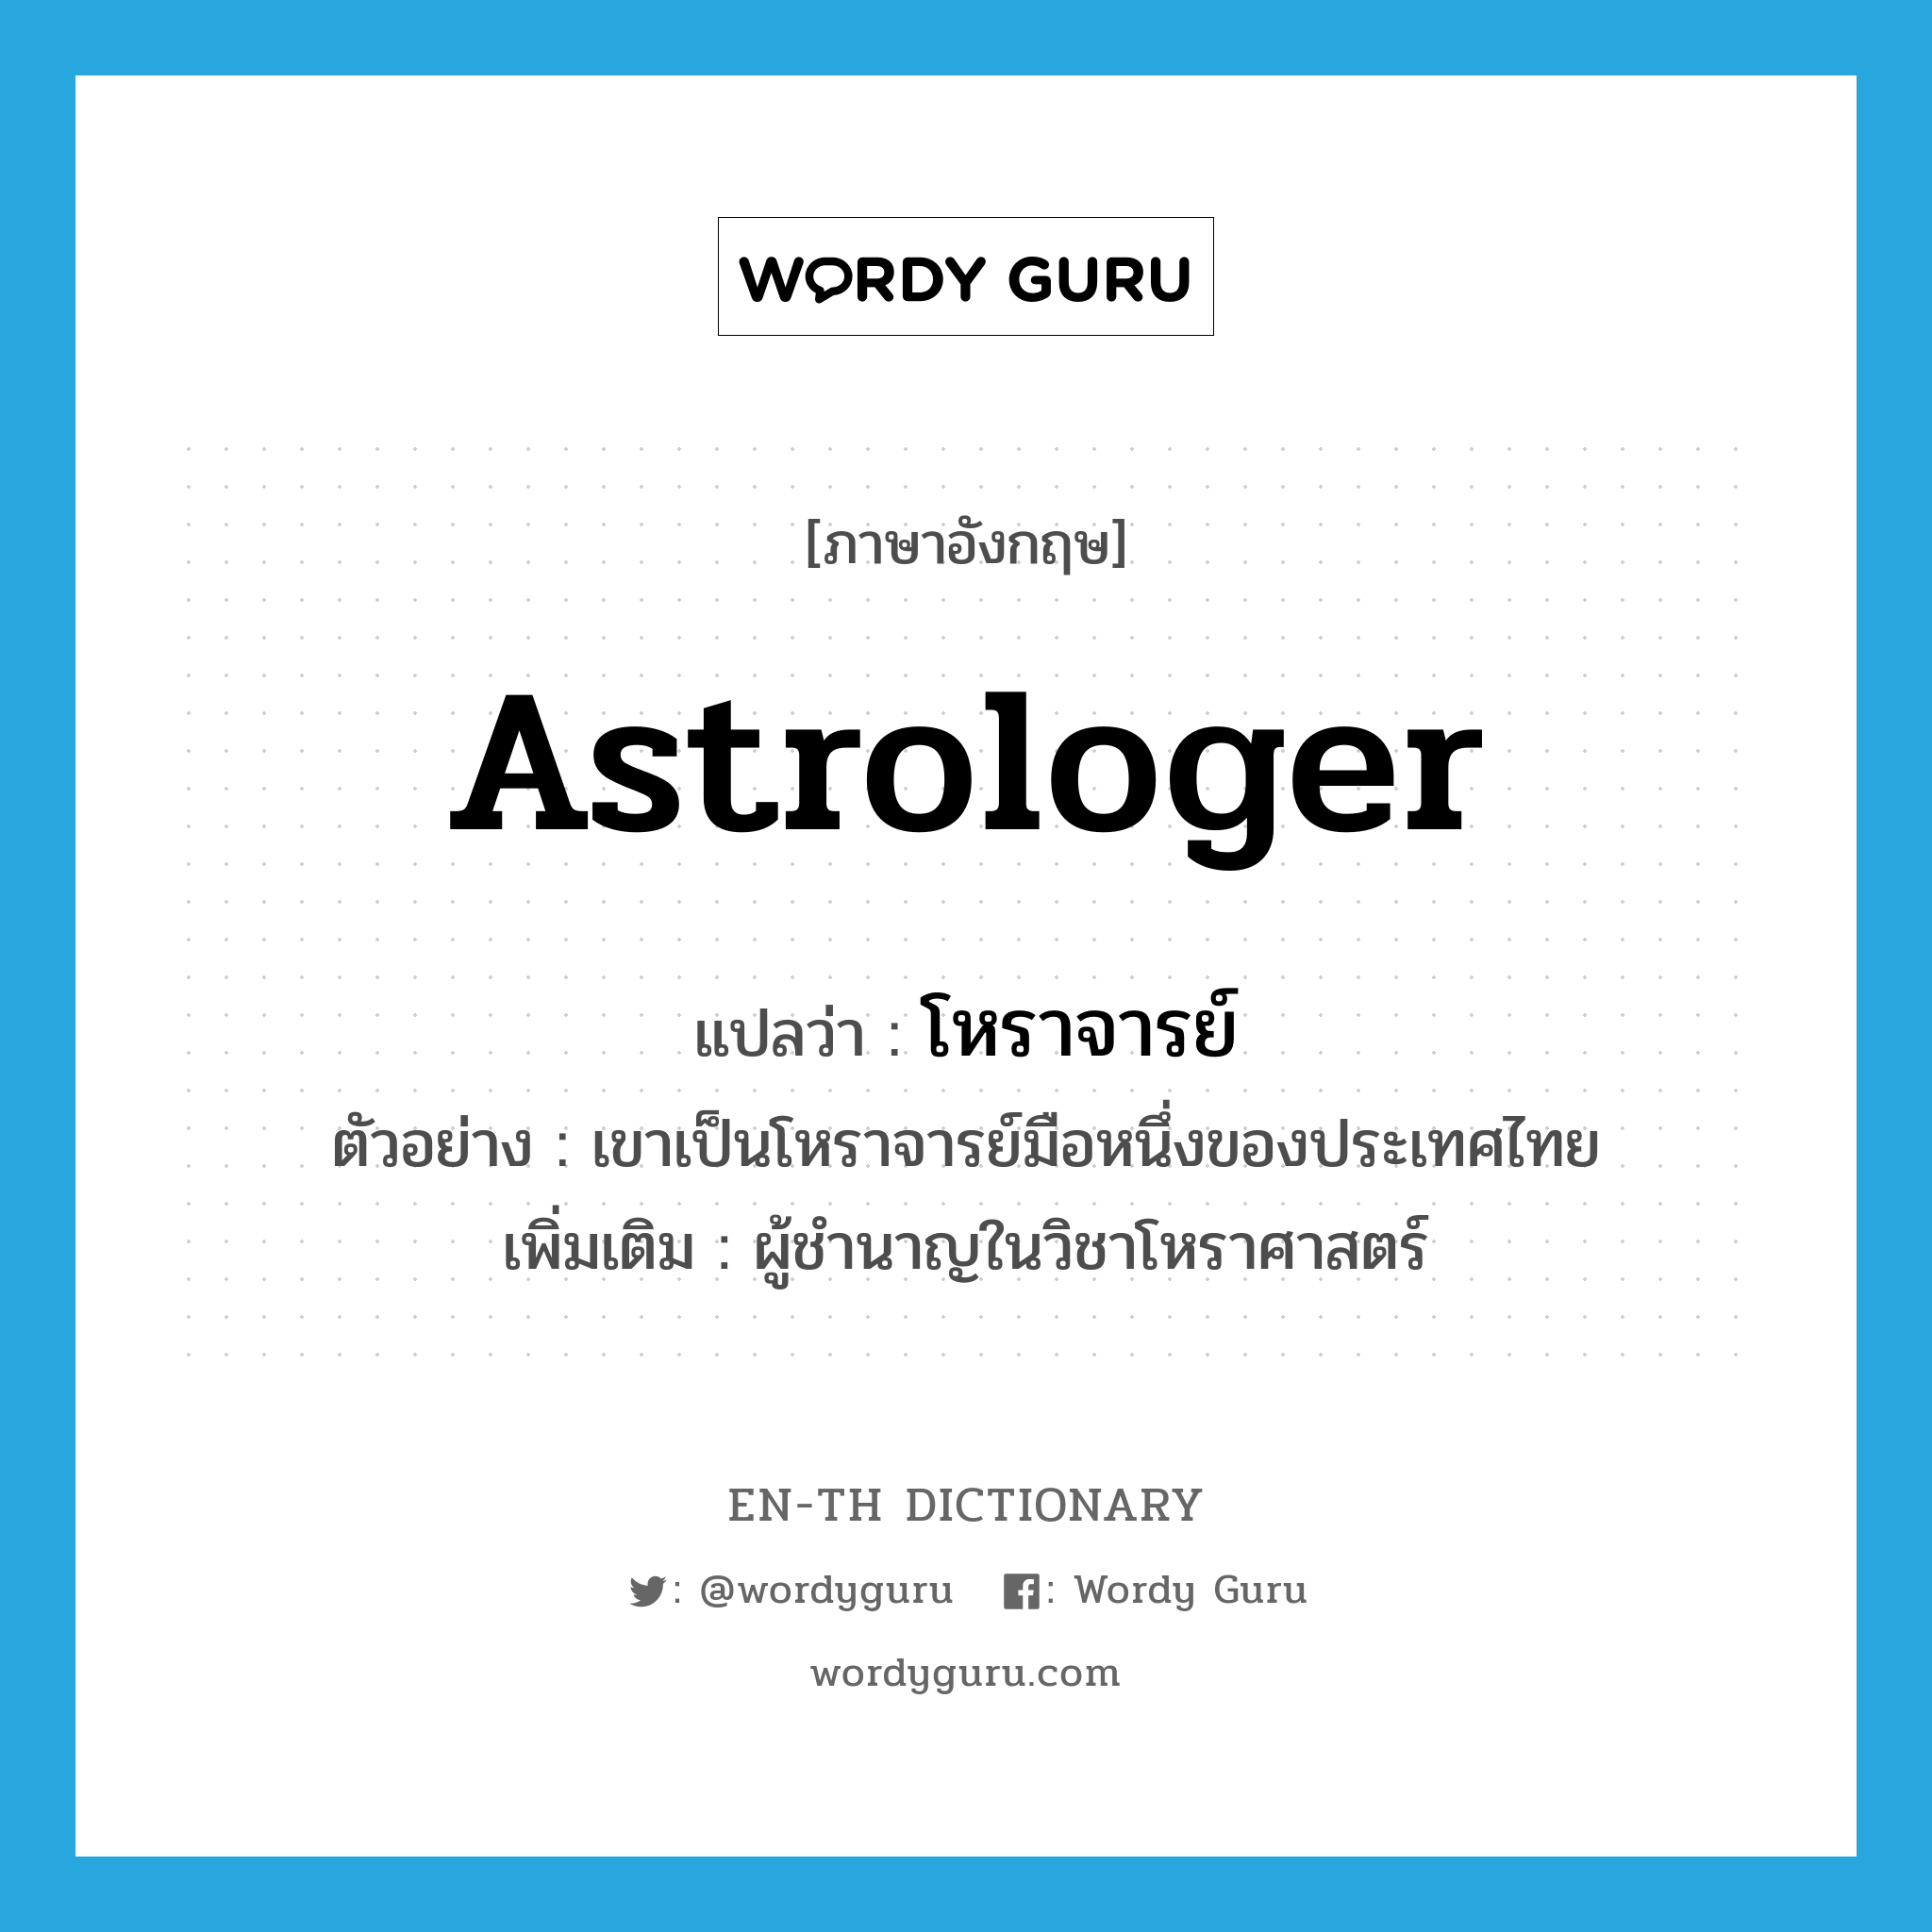 astrologer แปลว่า?, คำศัพท์ภาษาอังกฤษ astrologer แปลว่า โหราจารย์ ประเภท N ตัวอย่าง เขาเป็นโหราจารย์มือหนึ่งของประเทศไทย เพิ่มเติม ผู้ชำนาญในวิชาโหราศาสตร์ หมวด N